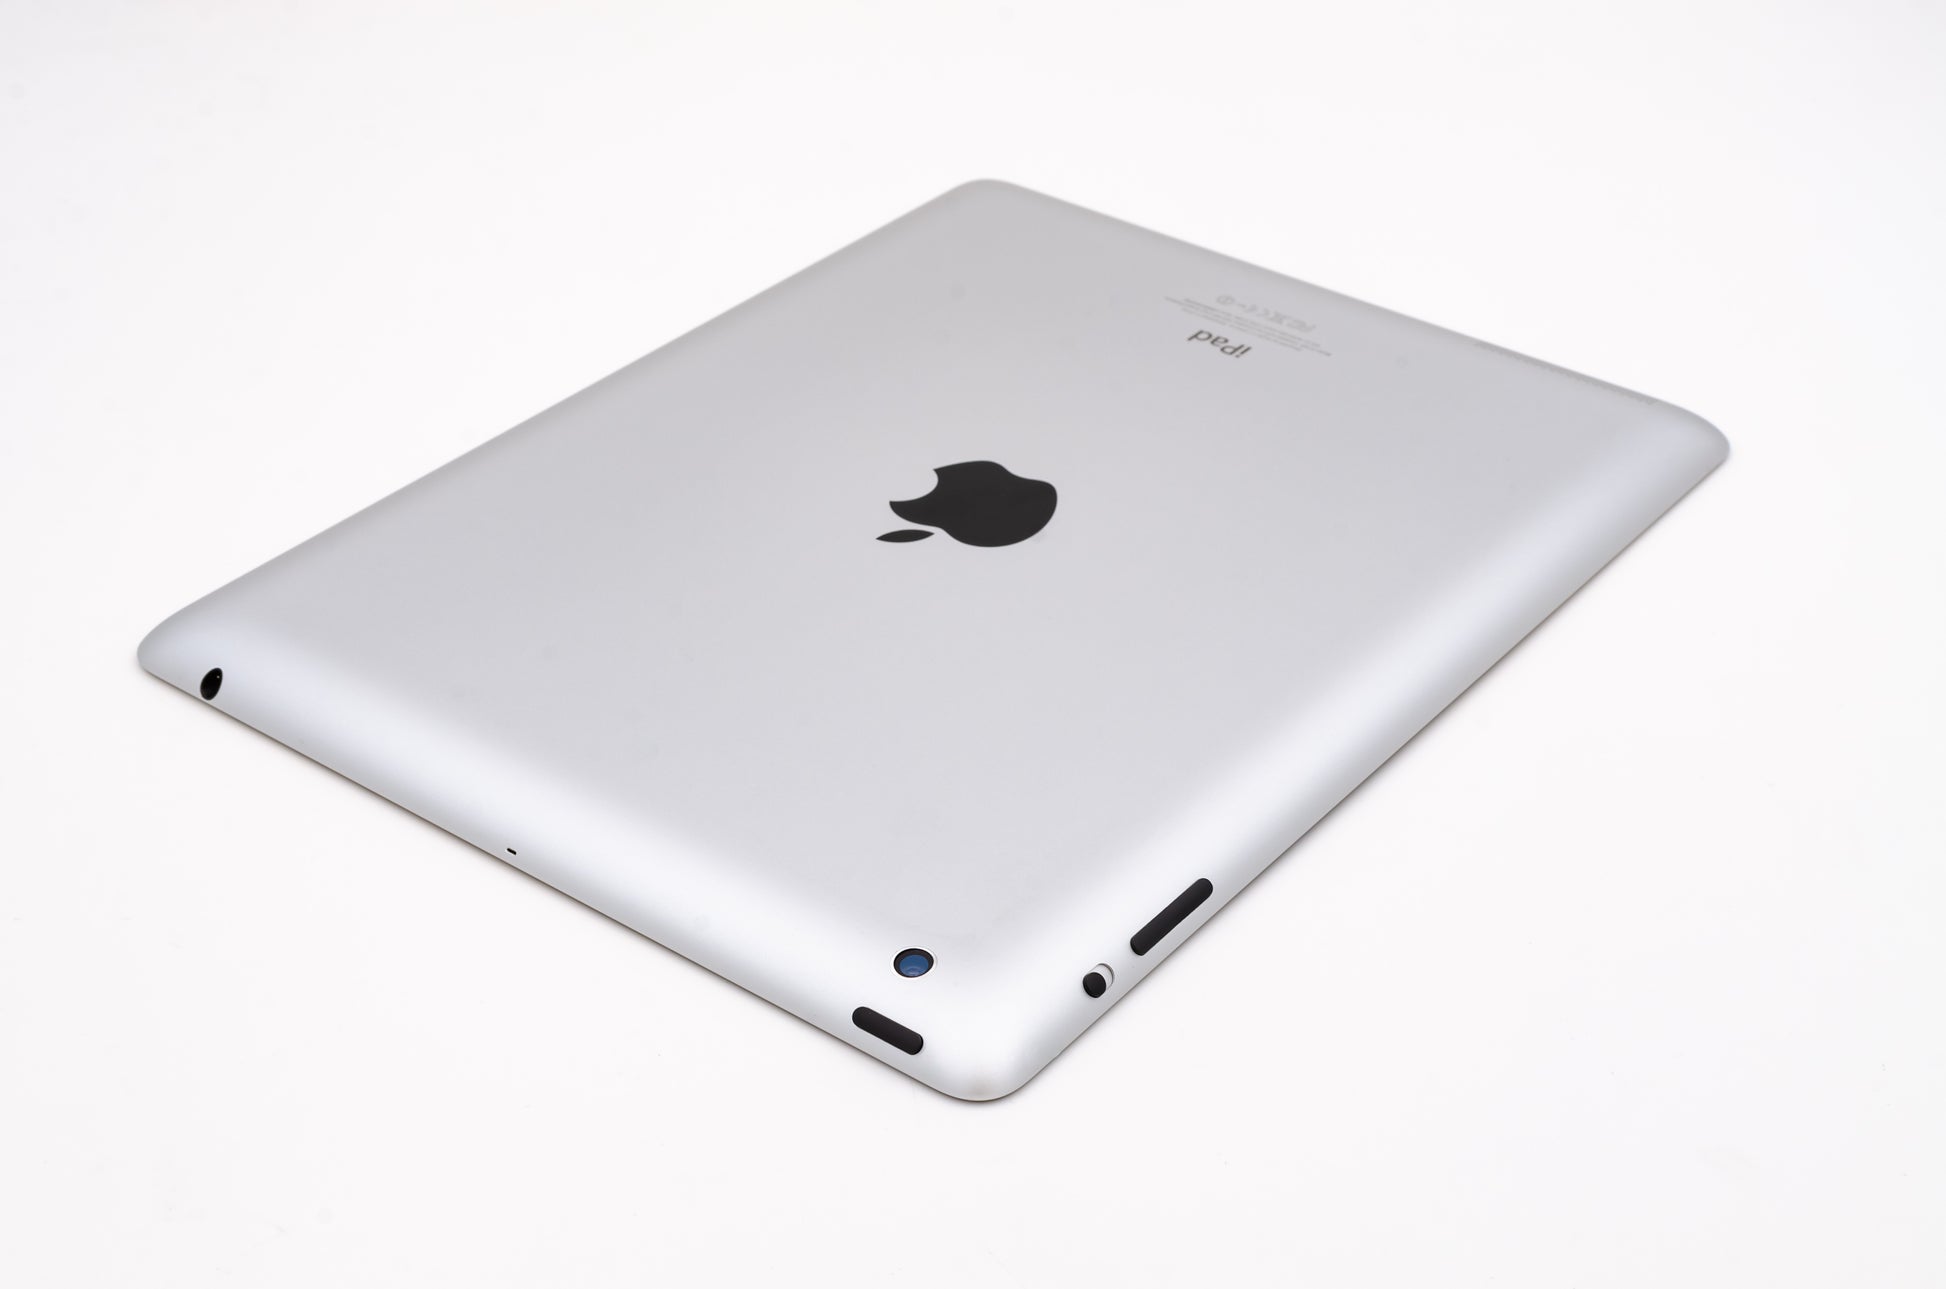 apple-2012-9.7-inch-ipad-4-a1460-silver/black-3